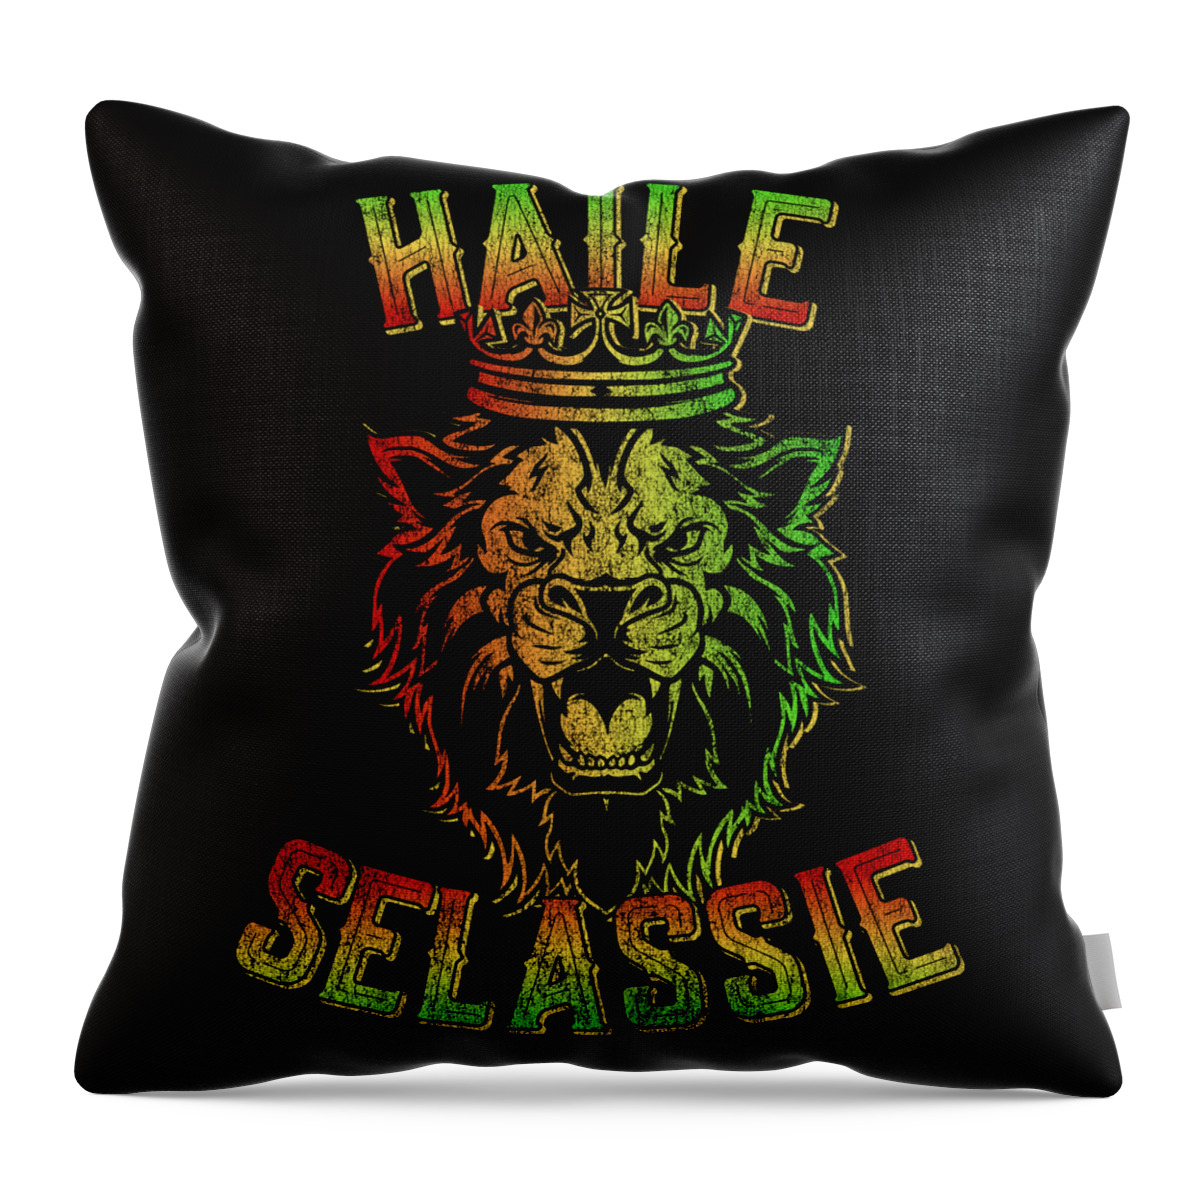 Cool Throw Pillow featuring the digital art Haile Selassie Rastafari Reggae by Flippin Sweet Gear